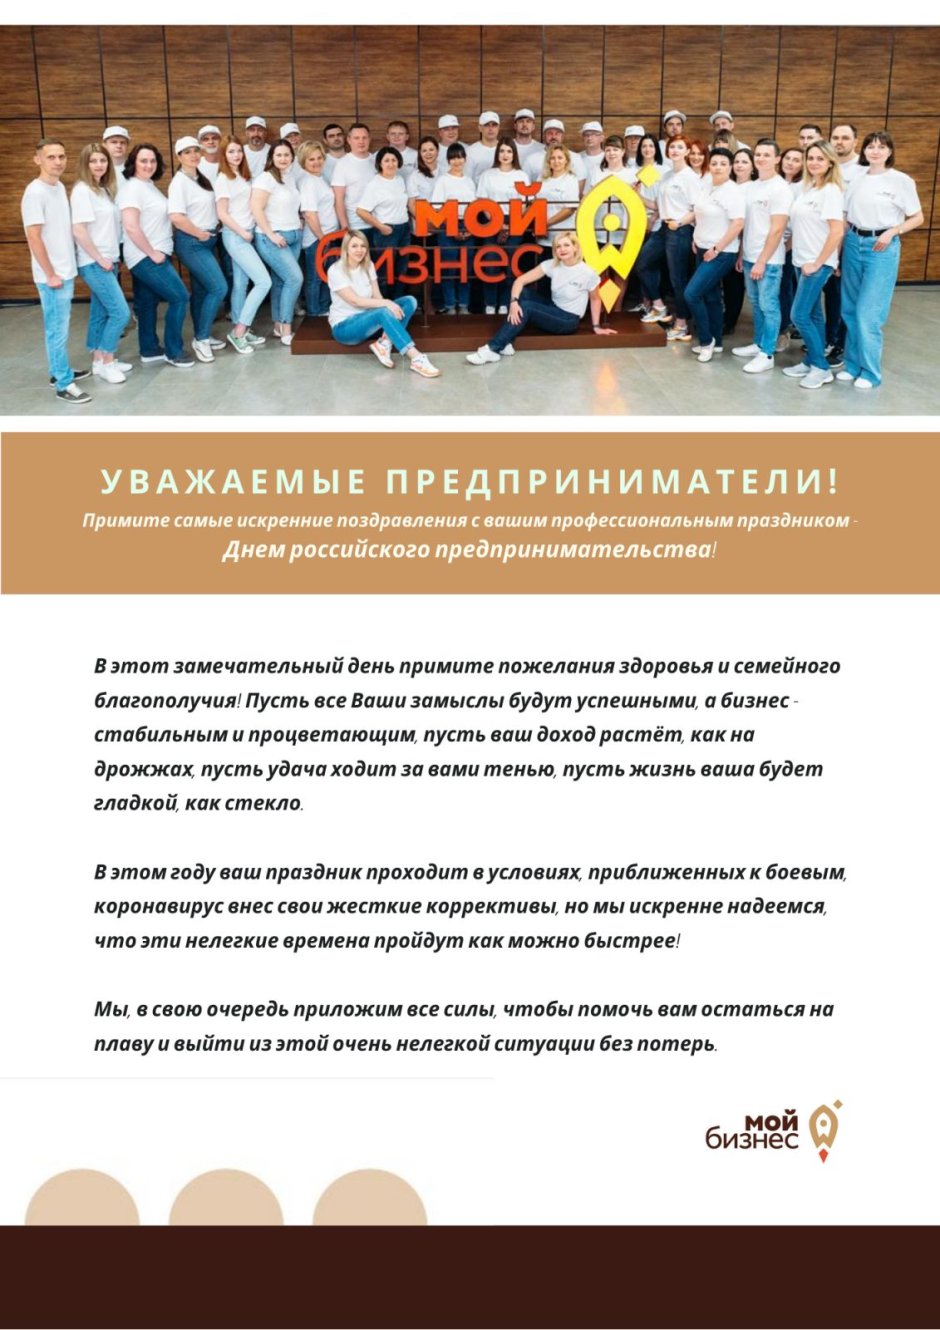 26 Мая день российского предпринимательства поздравления